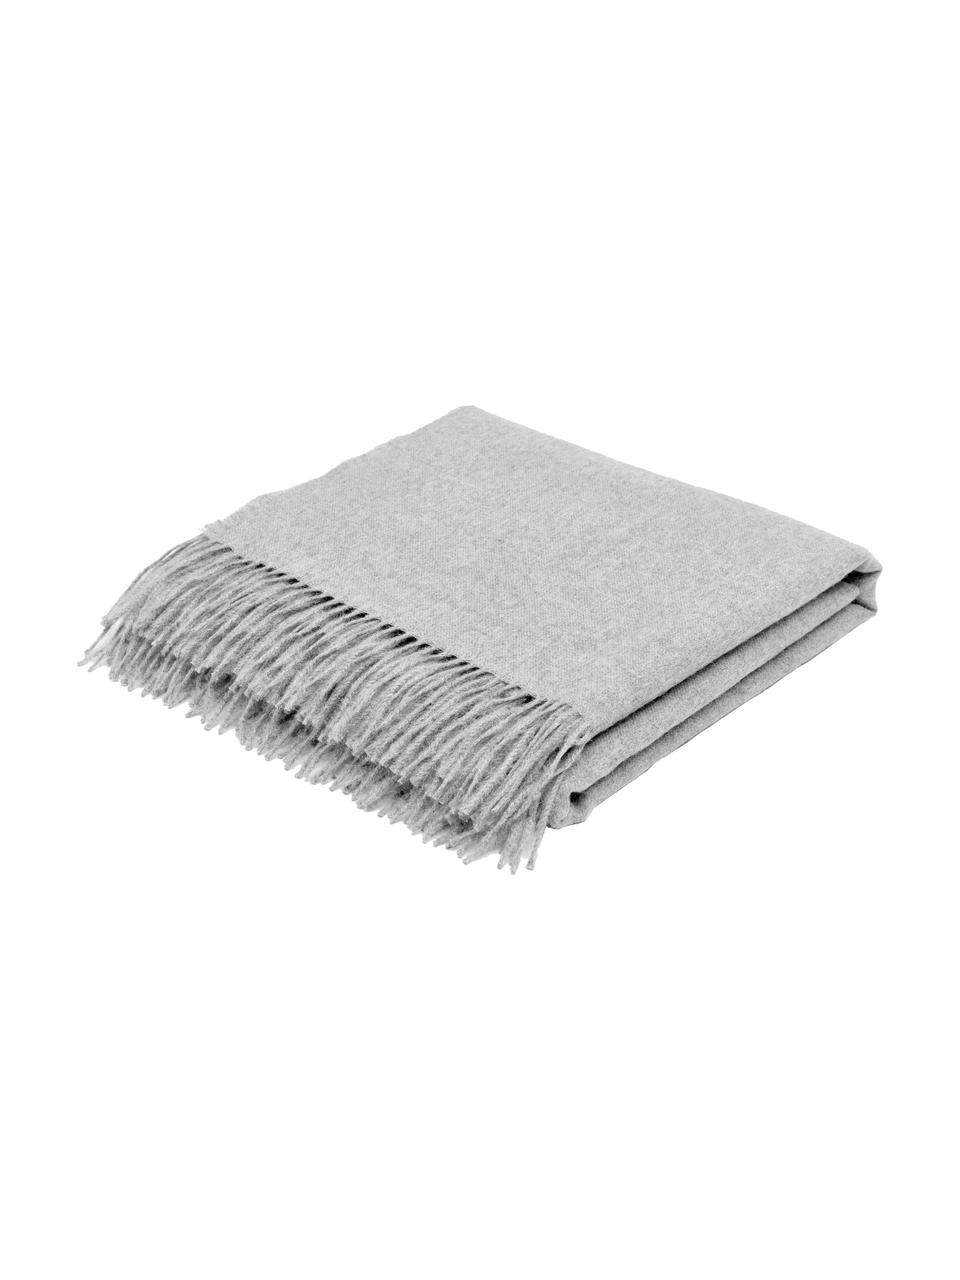 Plaid en laine vierge gris clair Luxury, Gris, larg. 130 x long. 200 cm